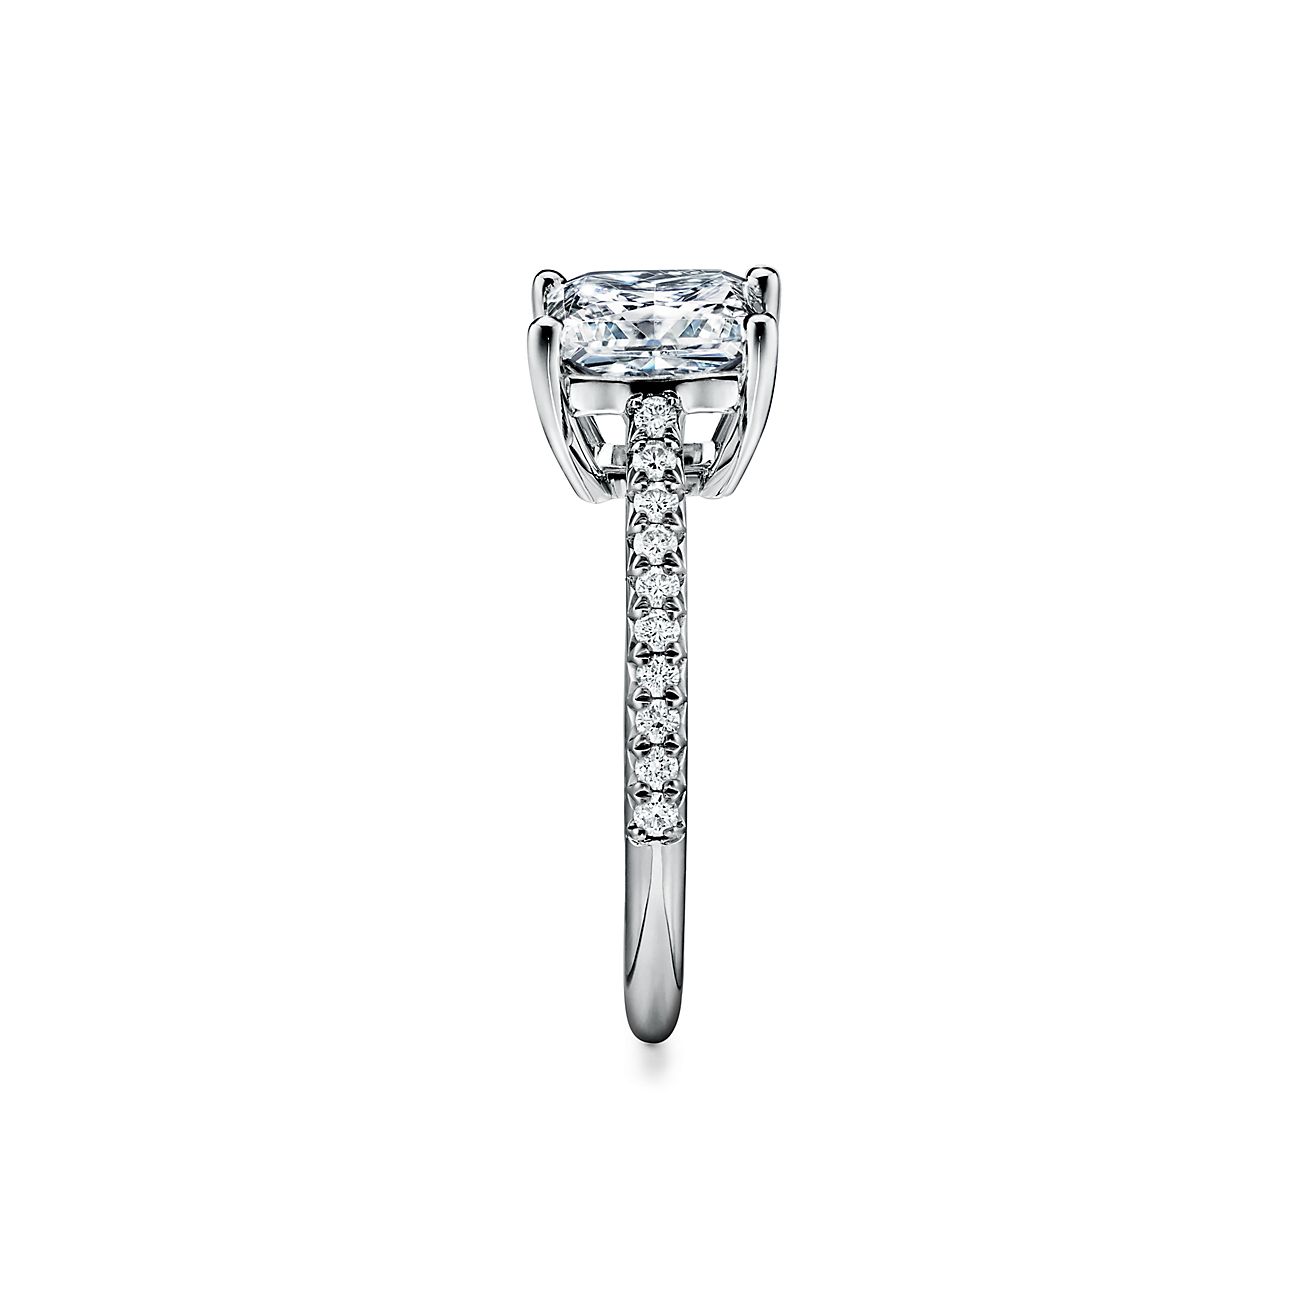 10 Breathtaking Tiffany's Wedding Engagement Rings and Matched Wedding  Ideas - Elegantweddinginvites.com Blog